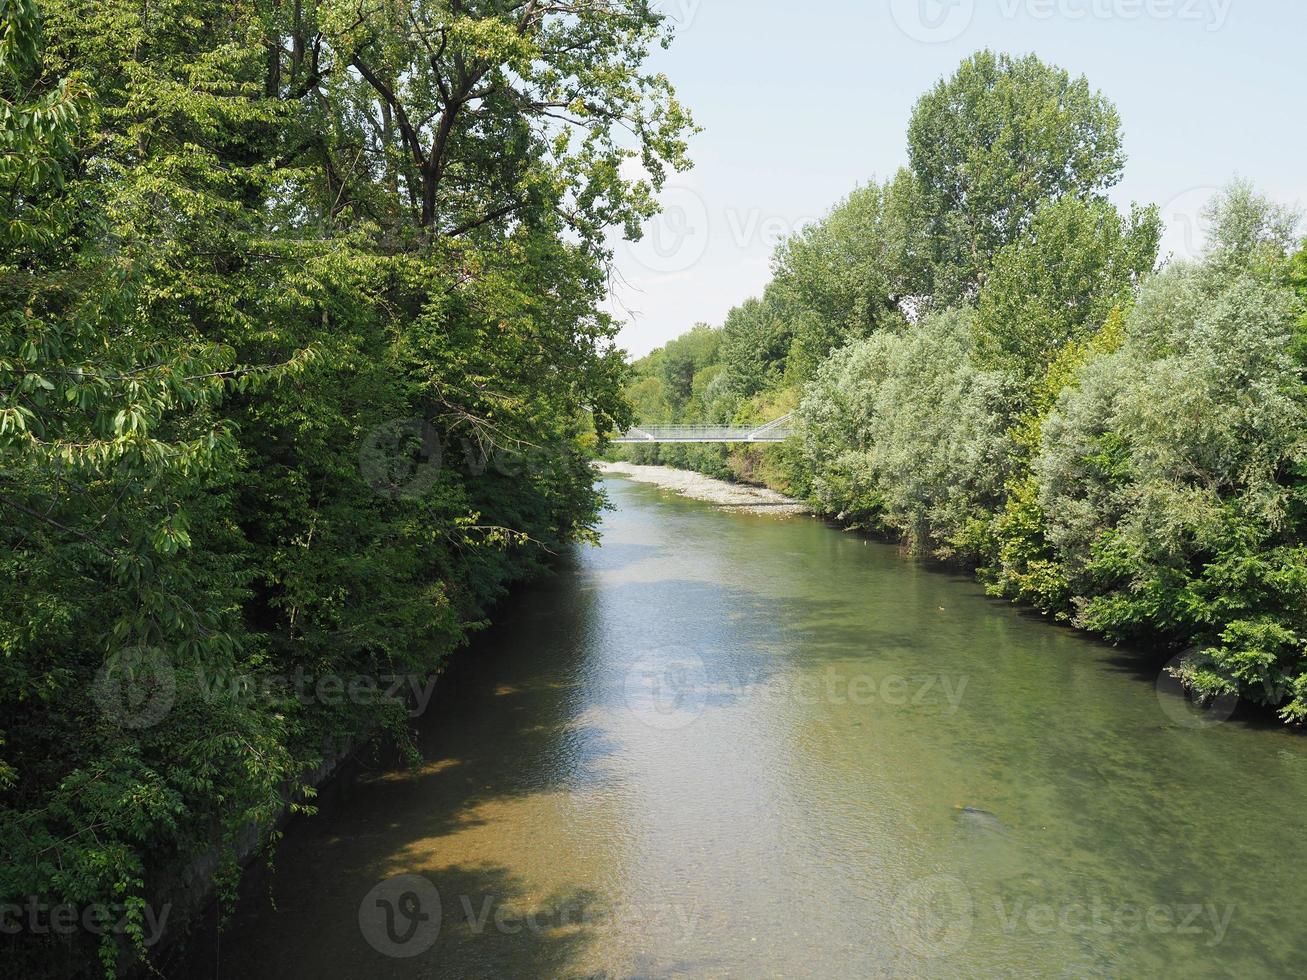 River Dora in Parco Dora park in Turin photo